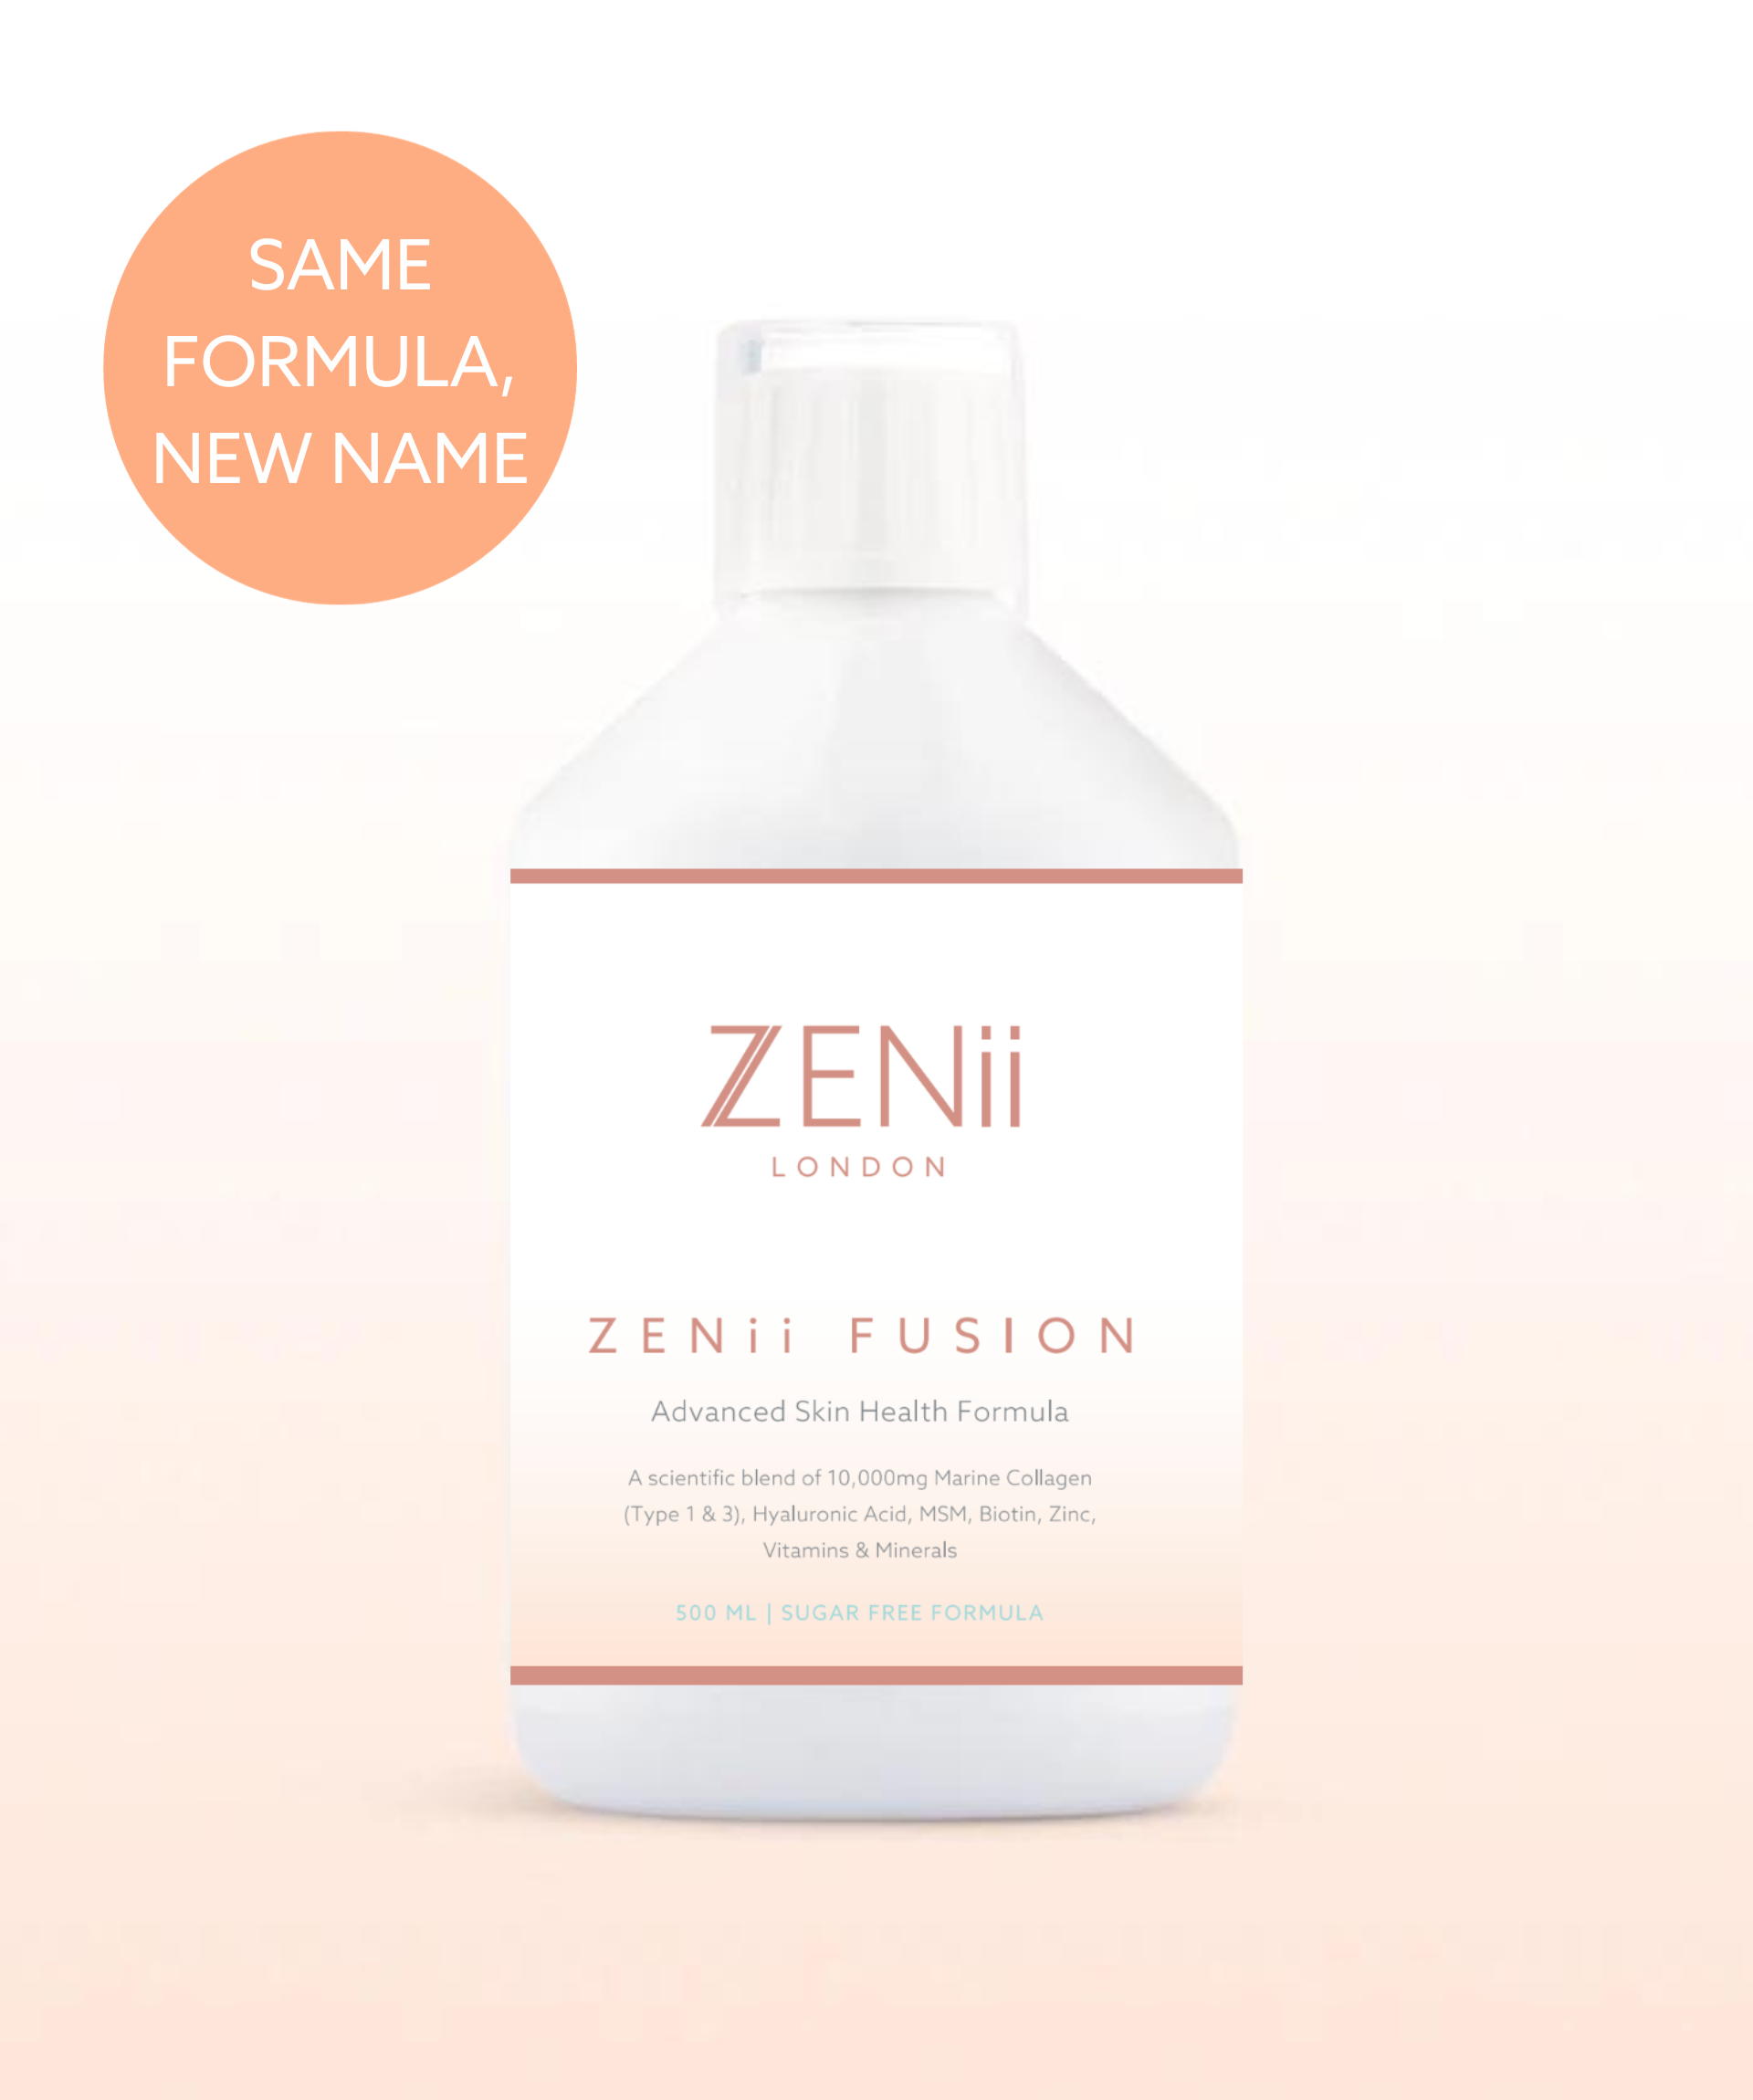 ZENii Fusion (Previously Skin Fusion)